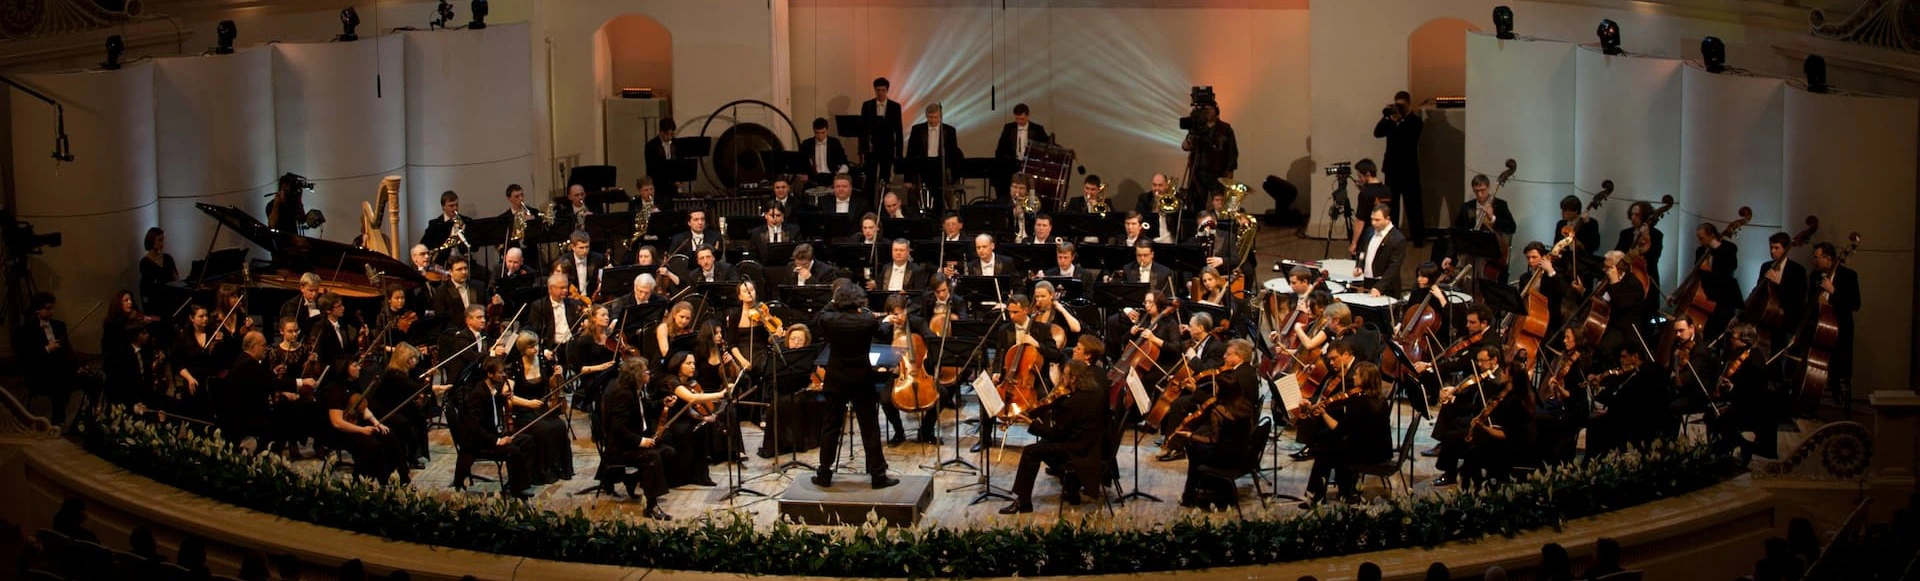 История одного шедевра «Пасторальная симфония» Бетховена